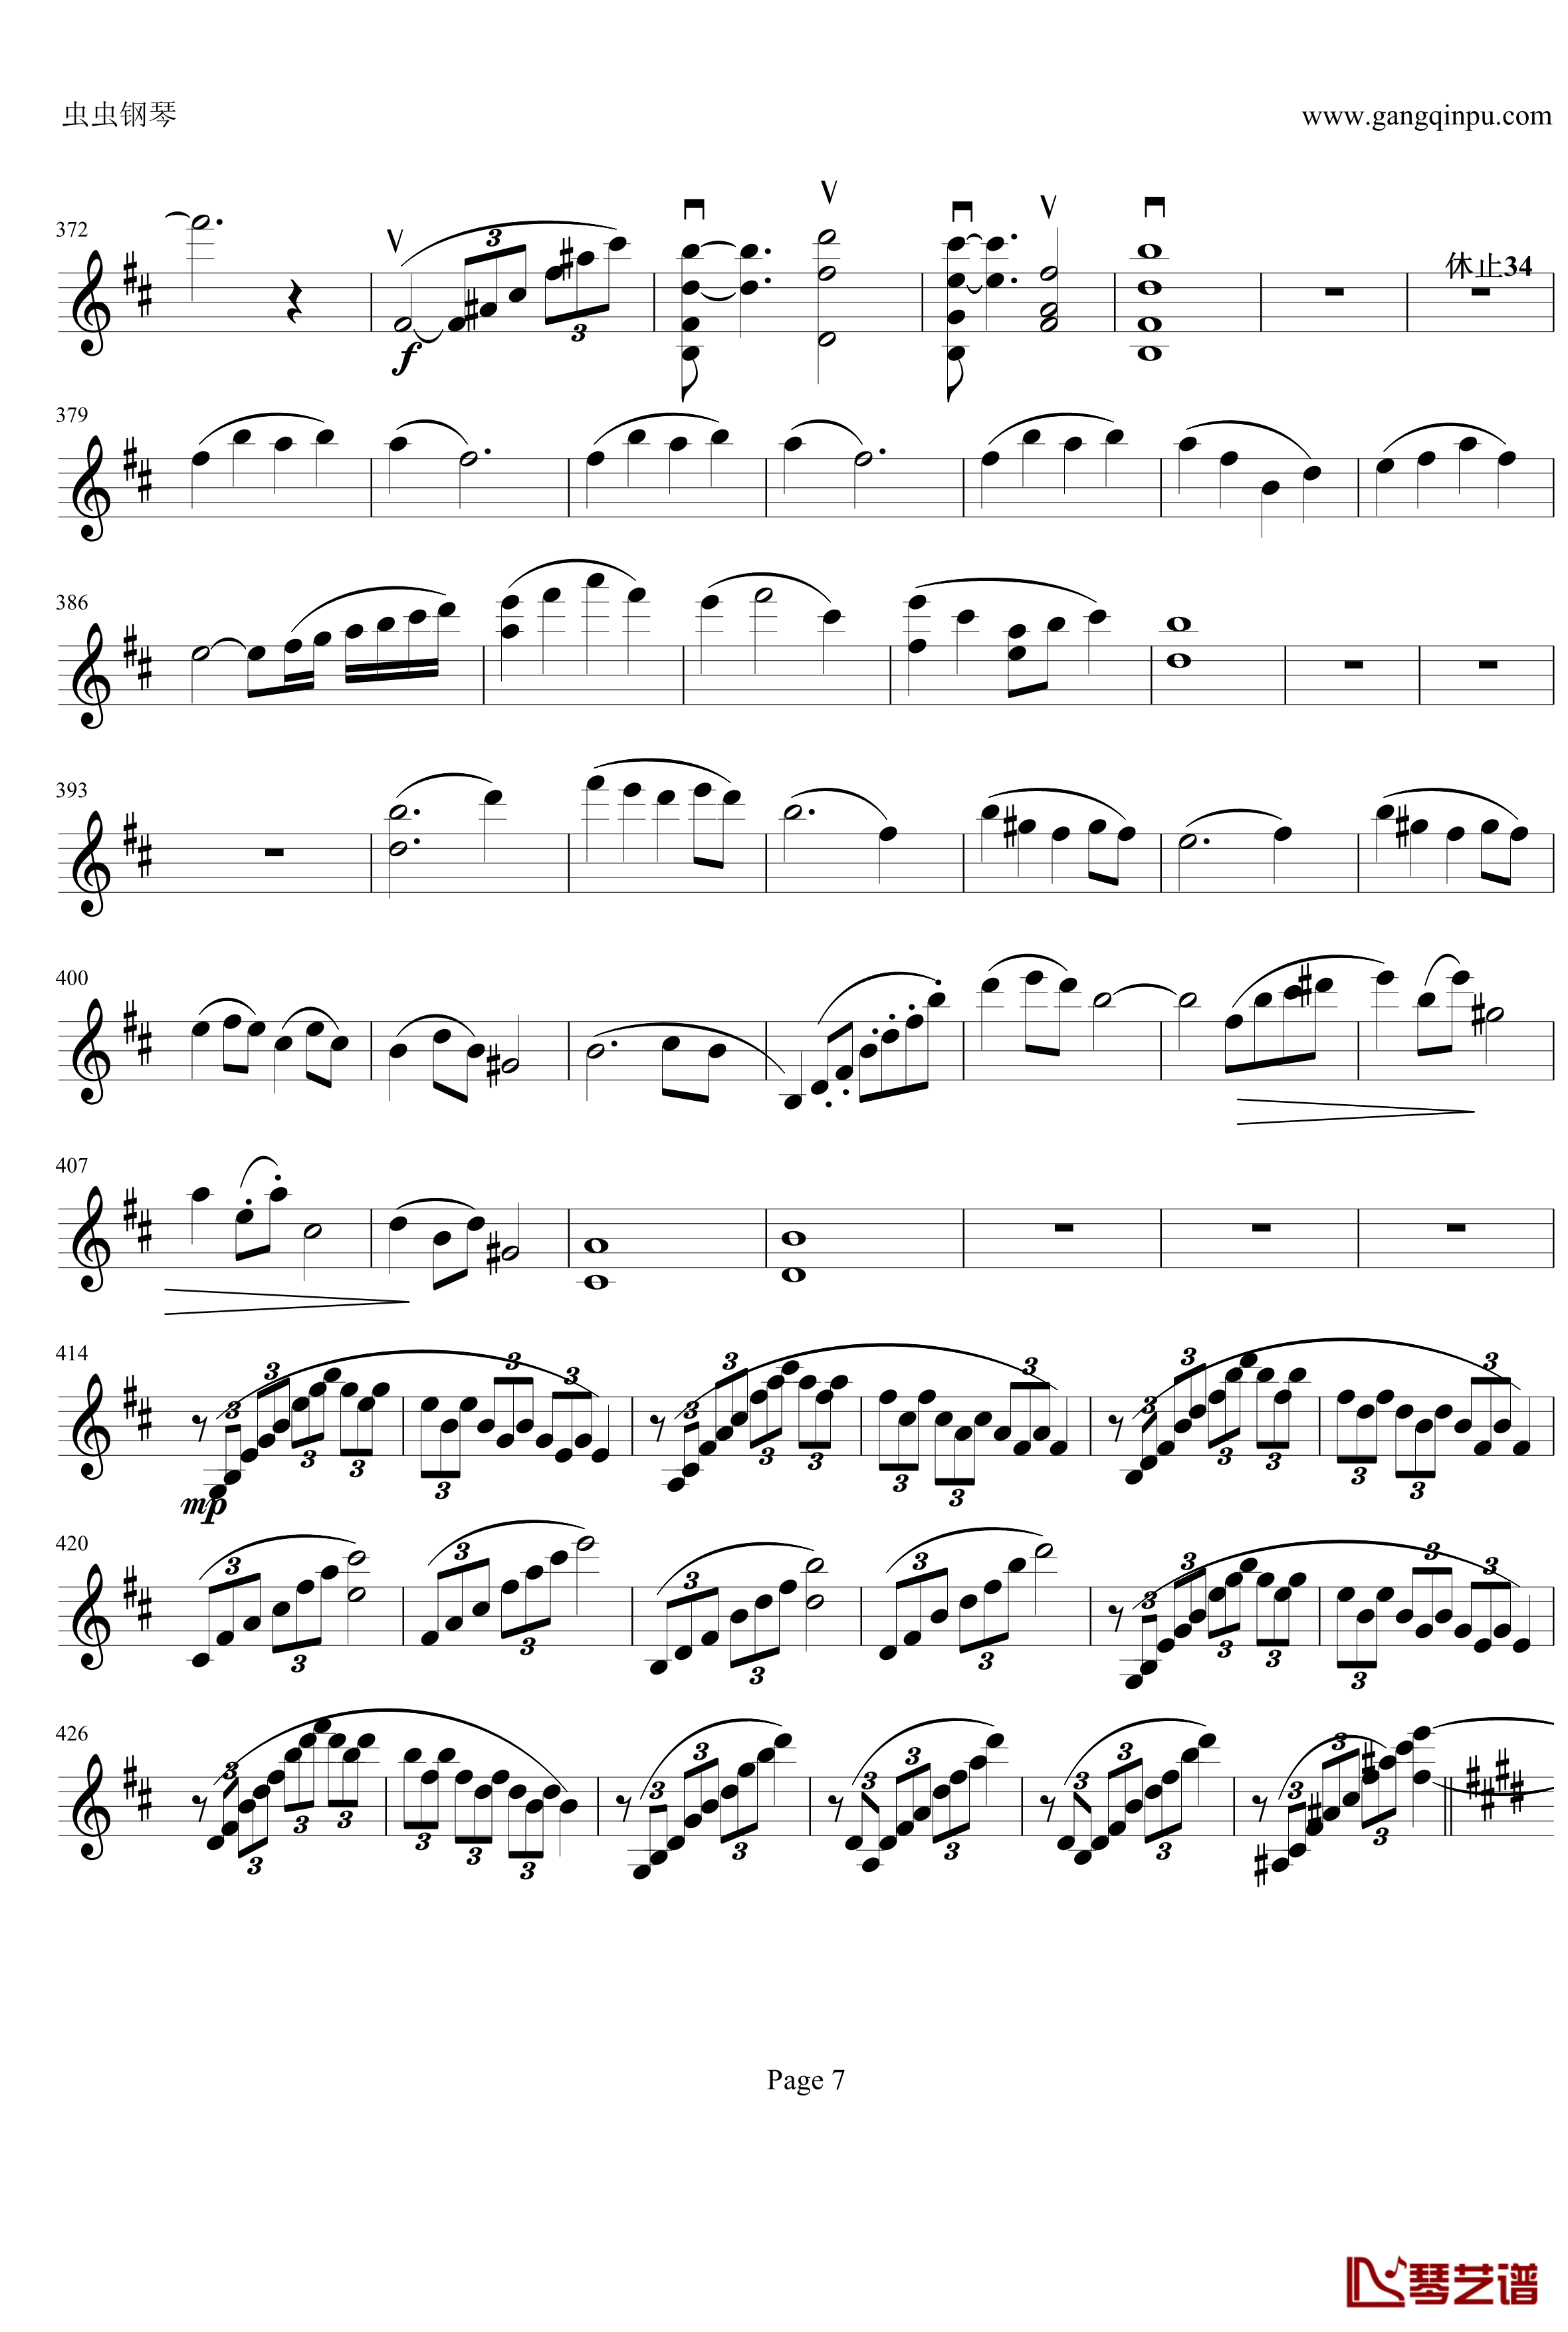 云南风情钢琴谱-第一乐章-b小调小提琴协奏曲-项道荣